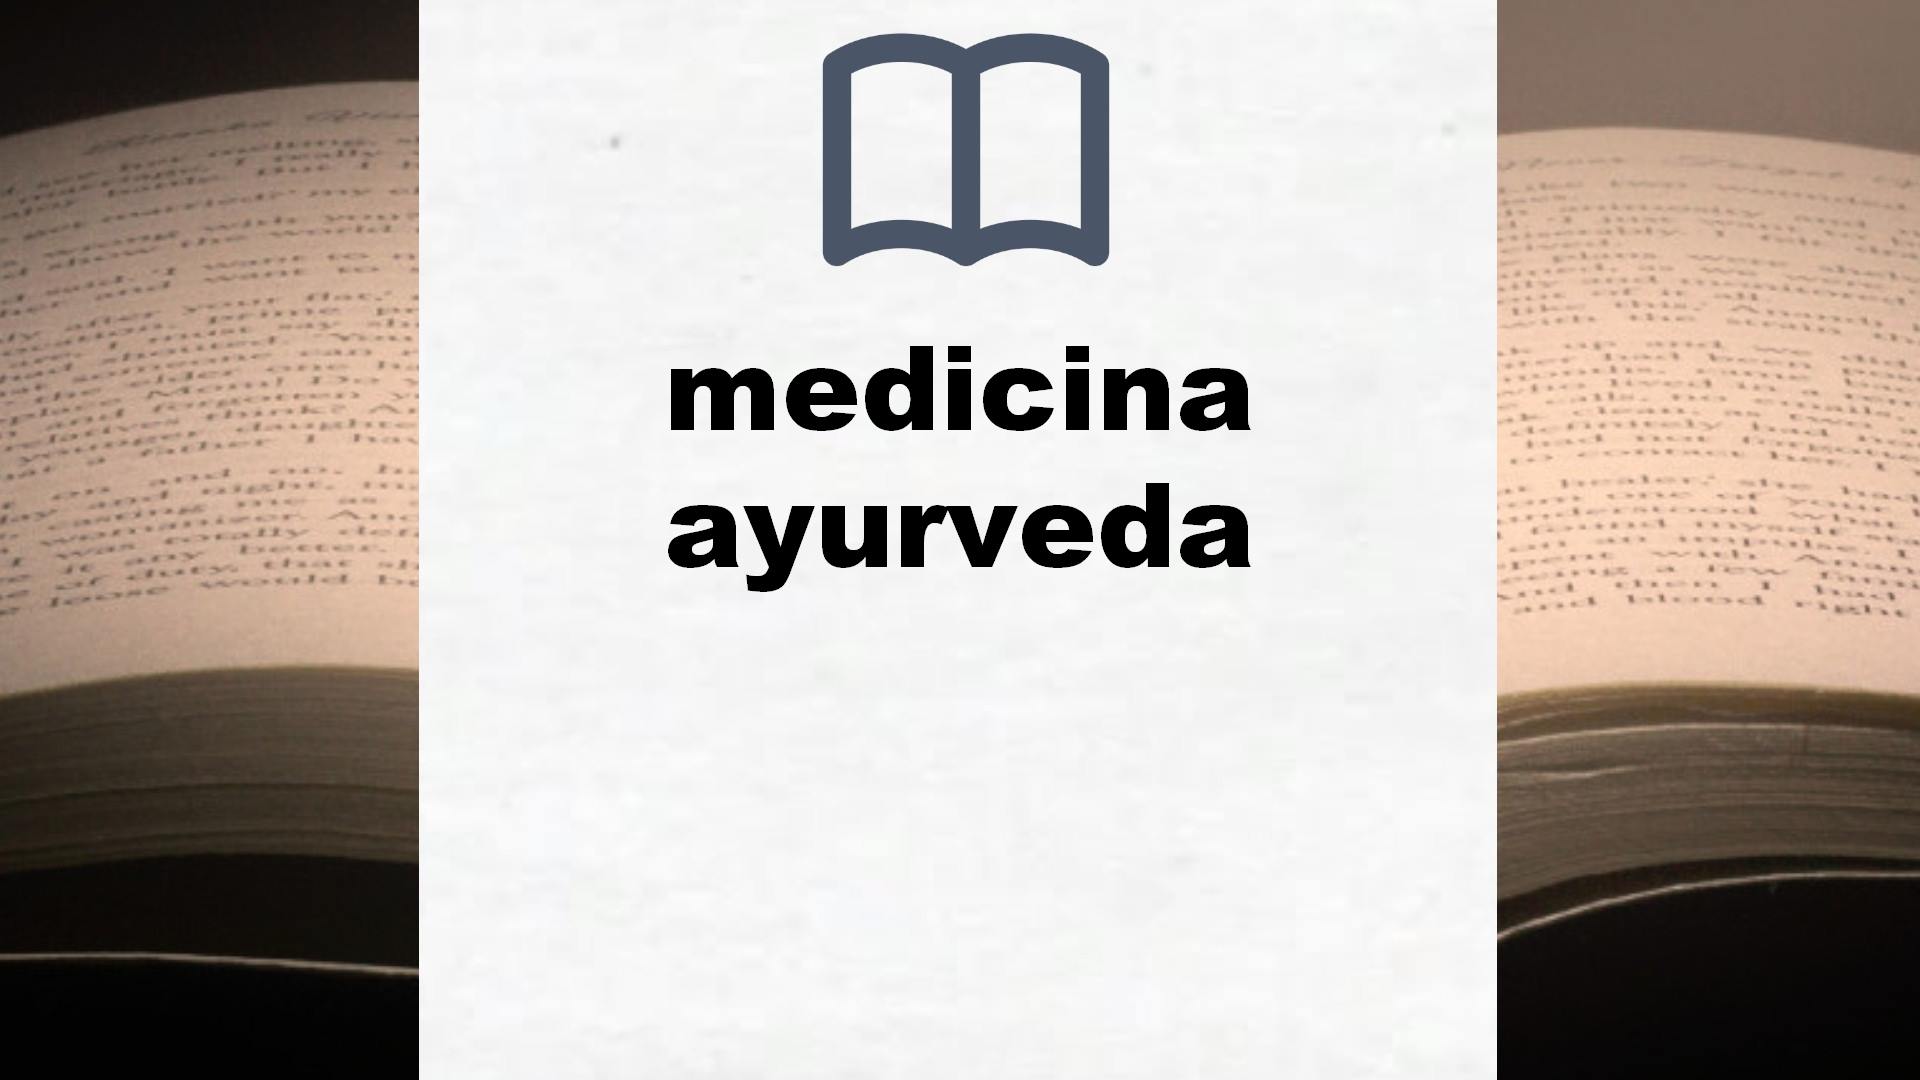 Libros sobre medicina ayurveda